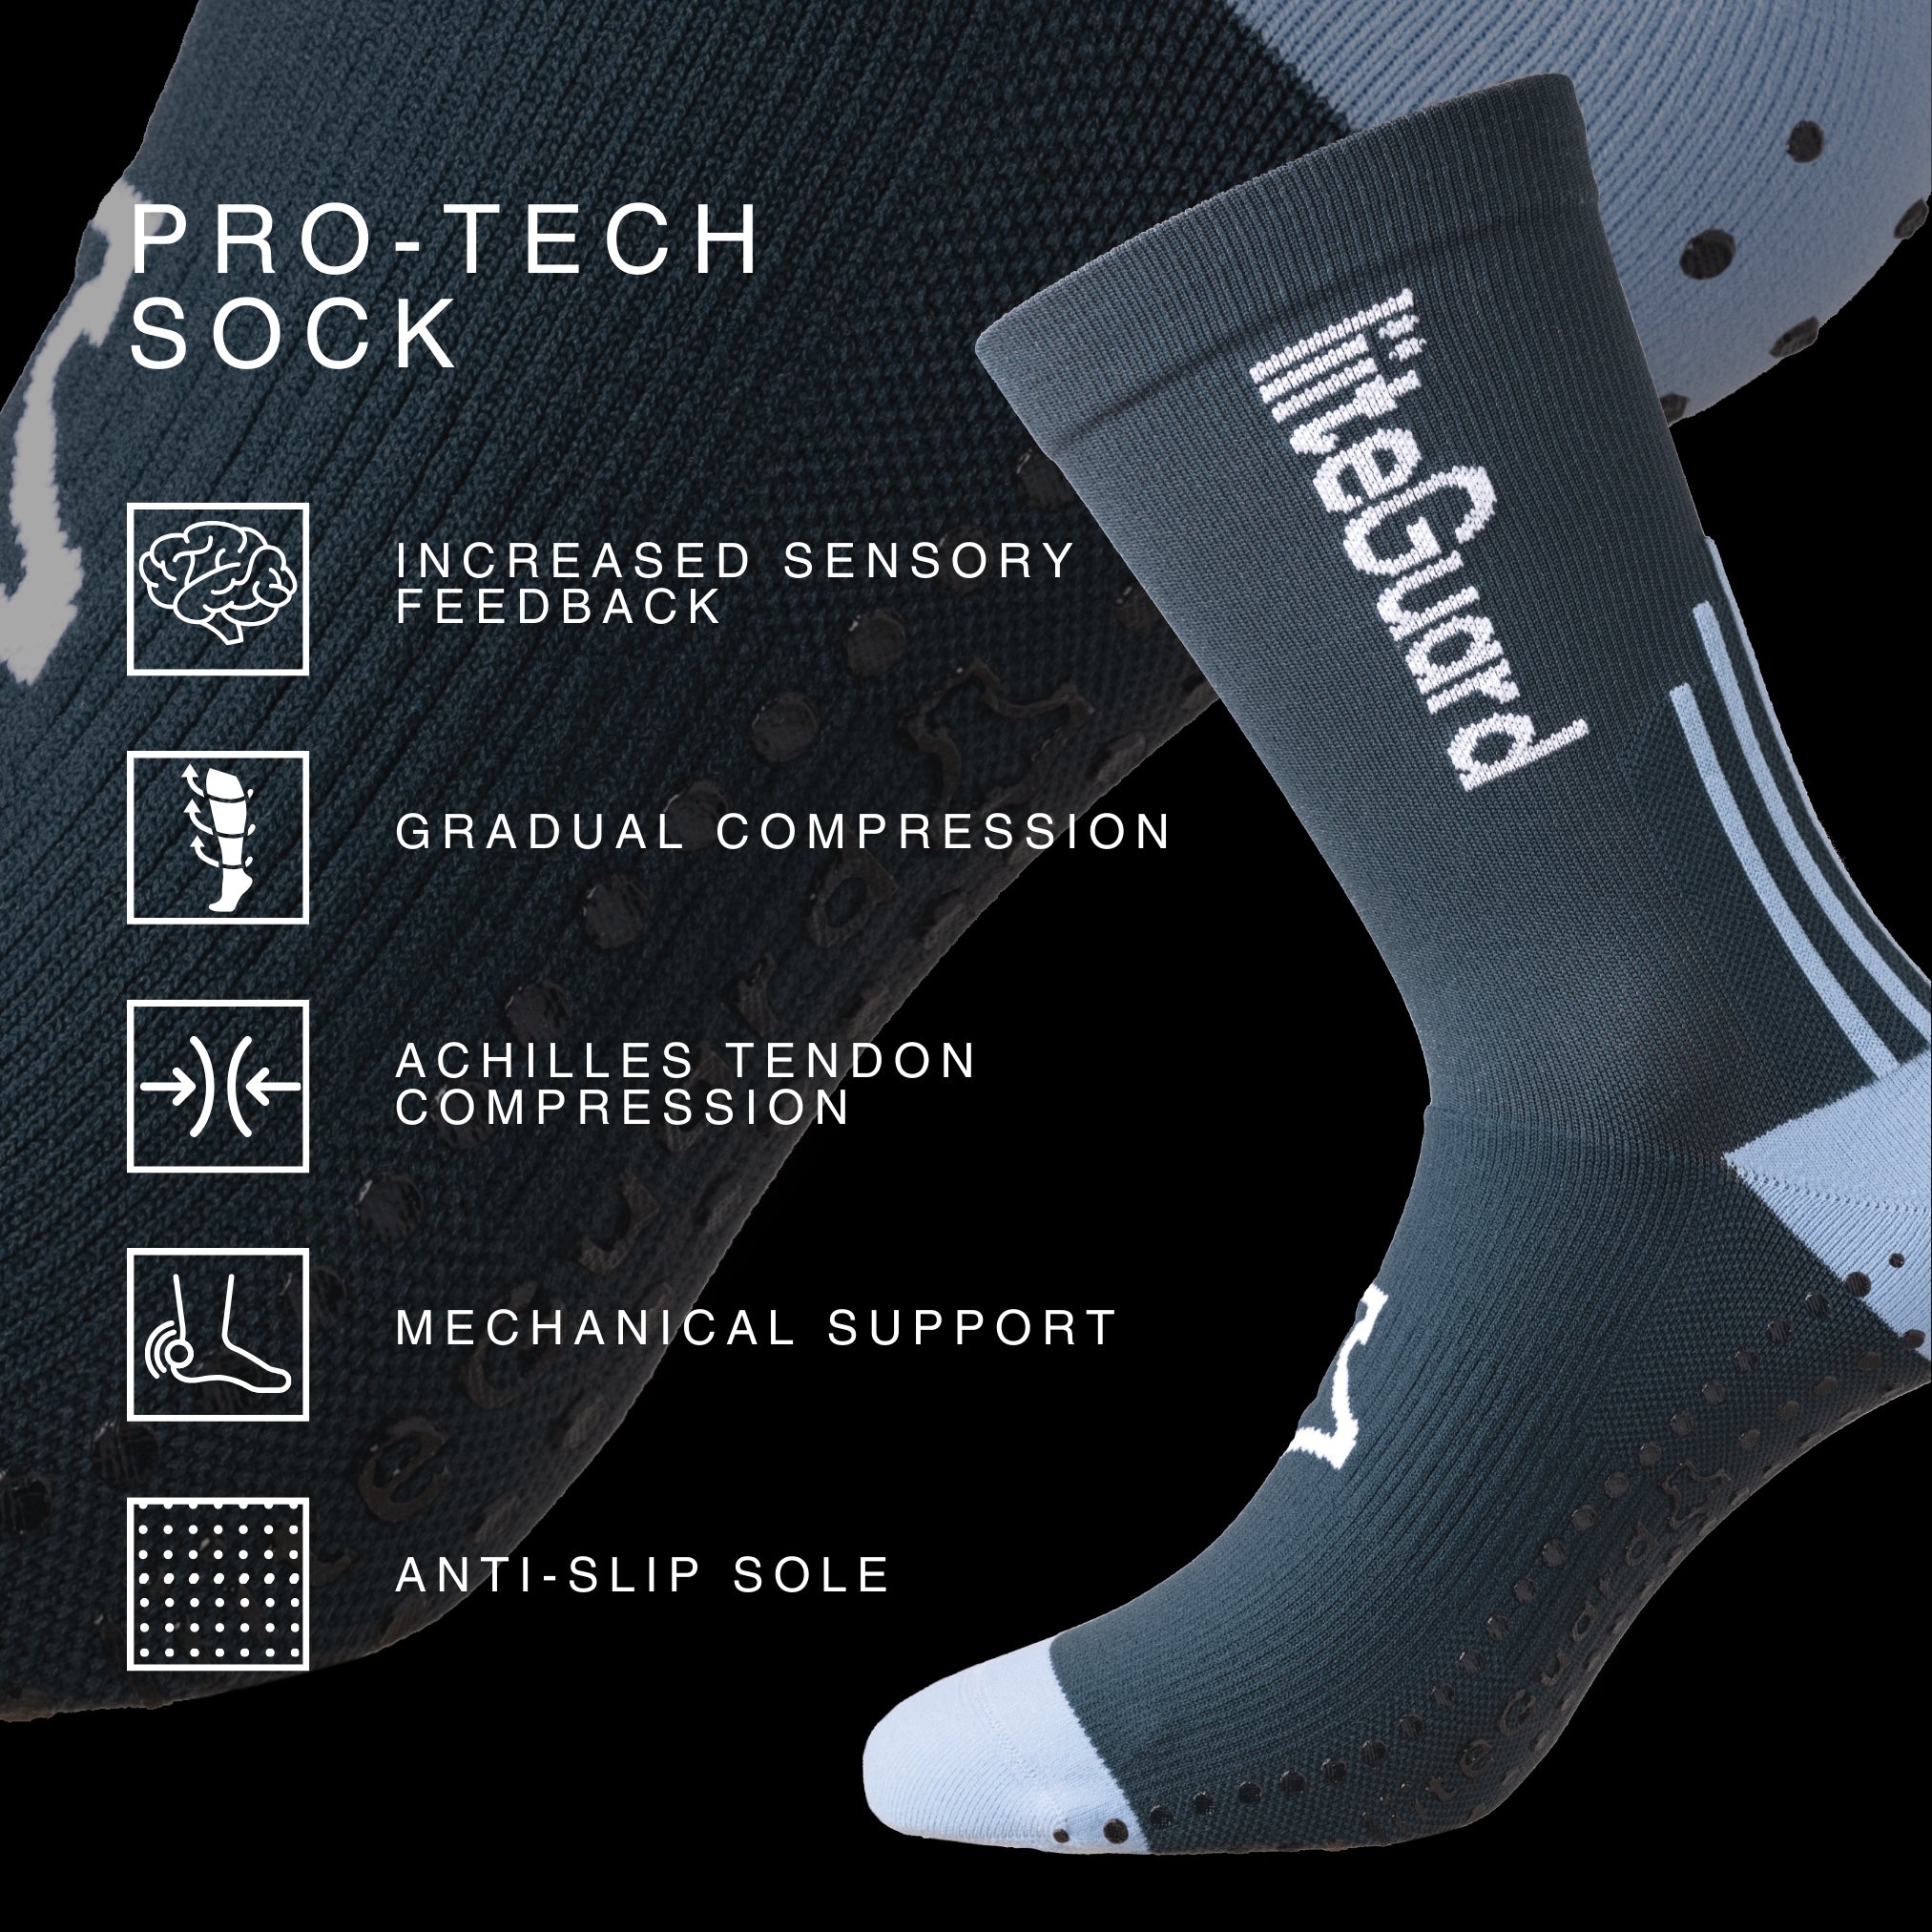 liiteGuard PRO-TECH SOCK Medium socks Dark Navy Blue